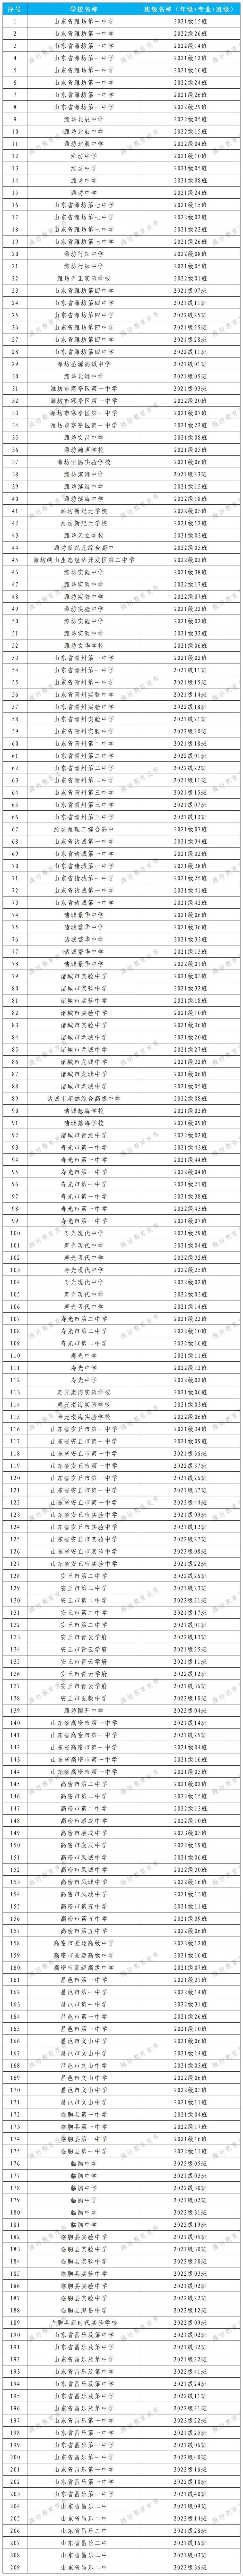 柳州西鹅中学老师名单图片